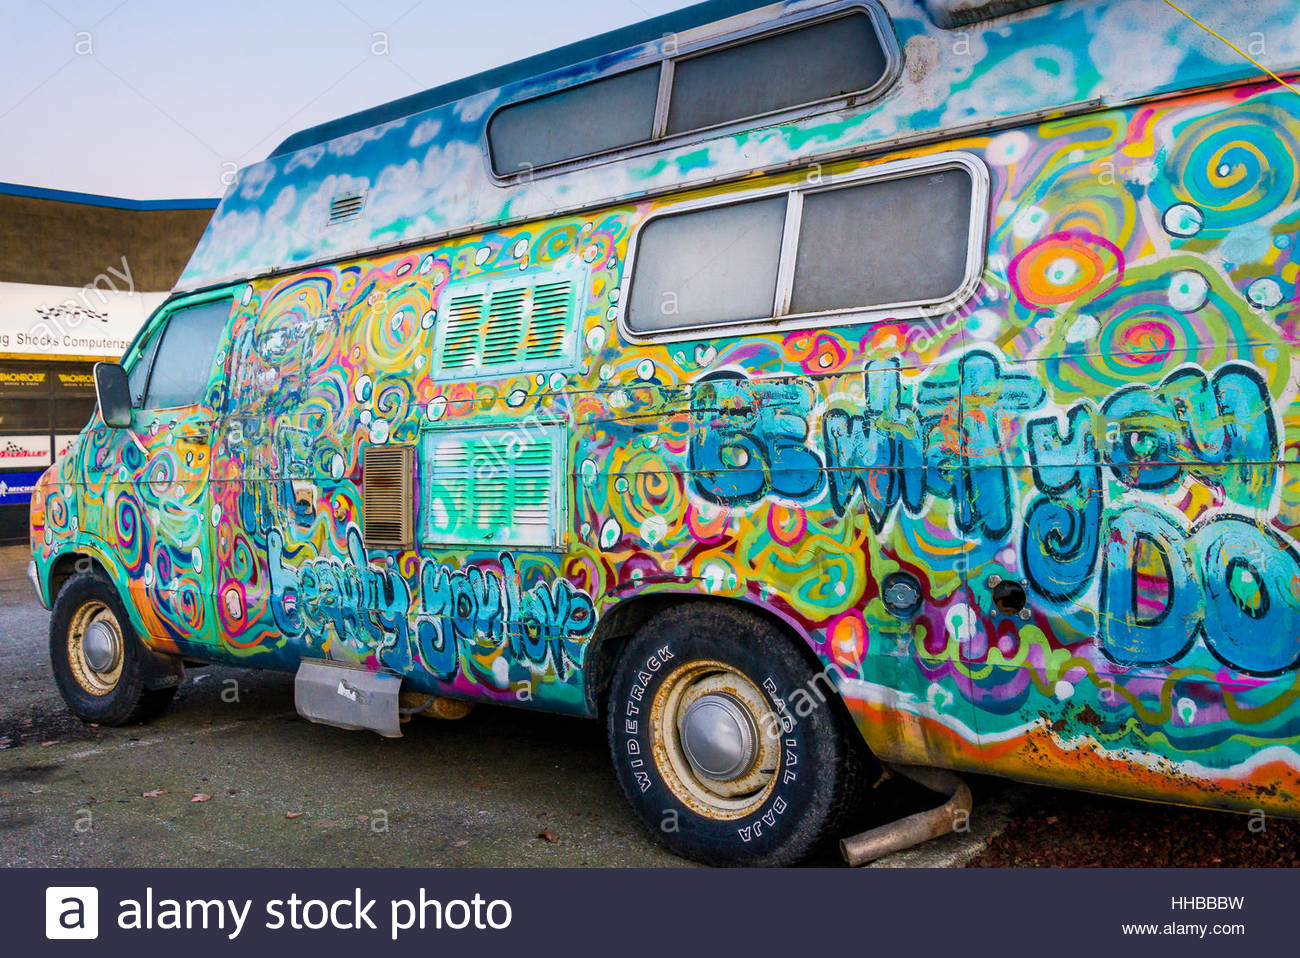 Painted Hippie Van Stock Photo 131172157 - Hippie Van Painting. 